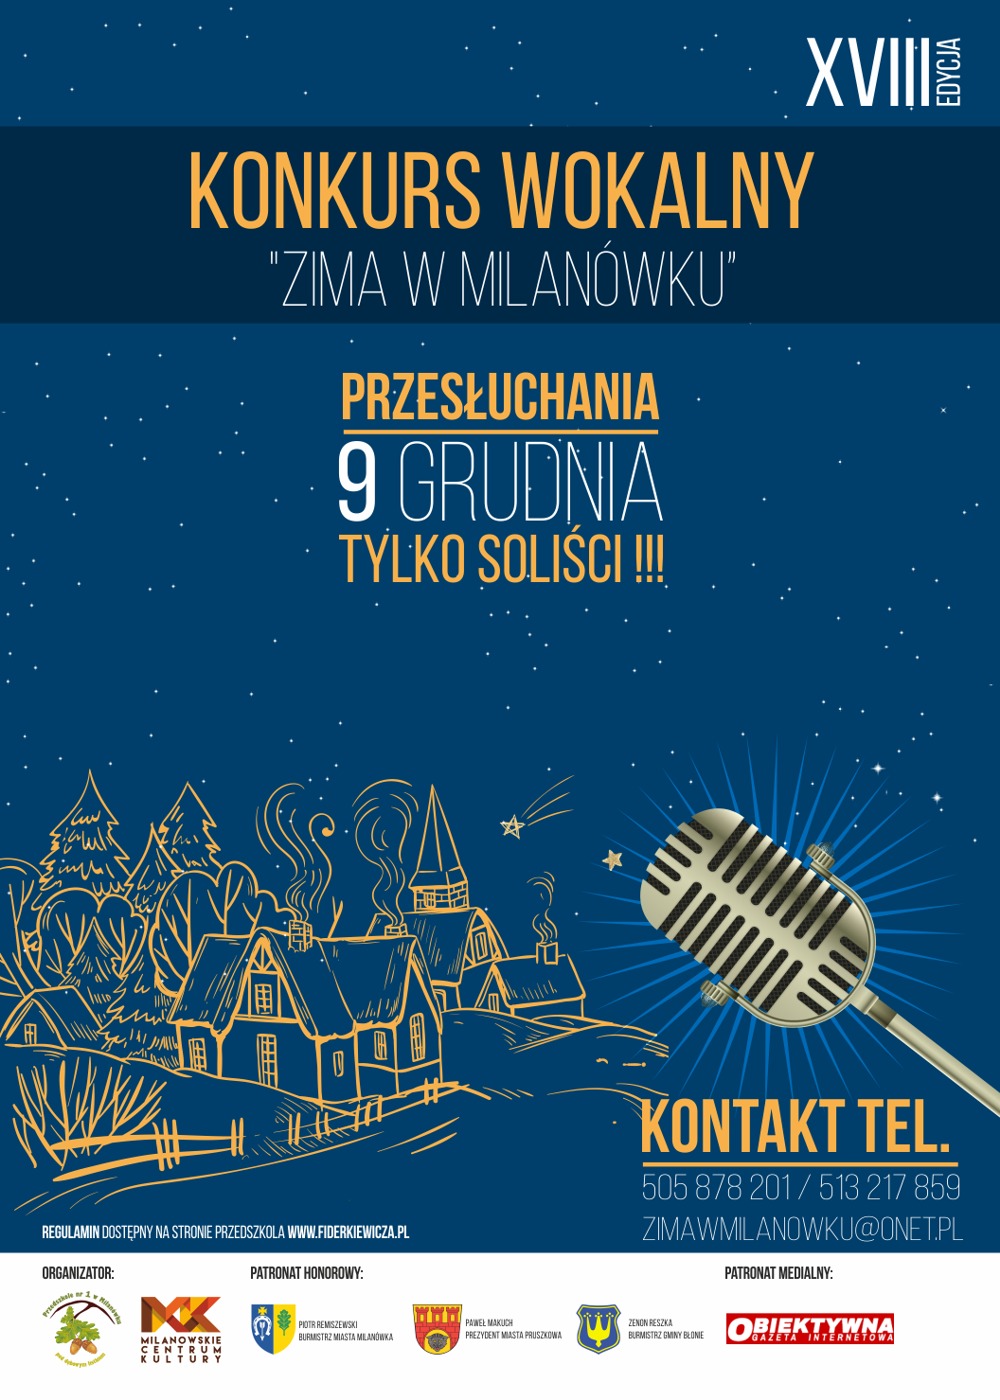 Plakat XVIII edycji Konkursu Wokalnego "Zima w Milanówku". Przesłuchania 9 grudnia - tylko soliści.